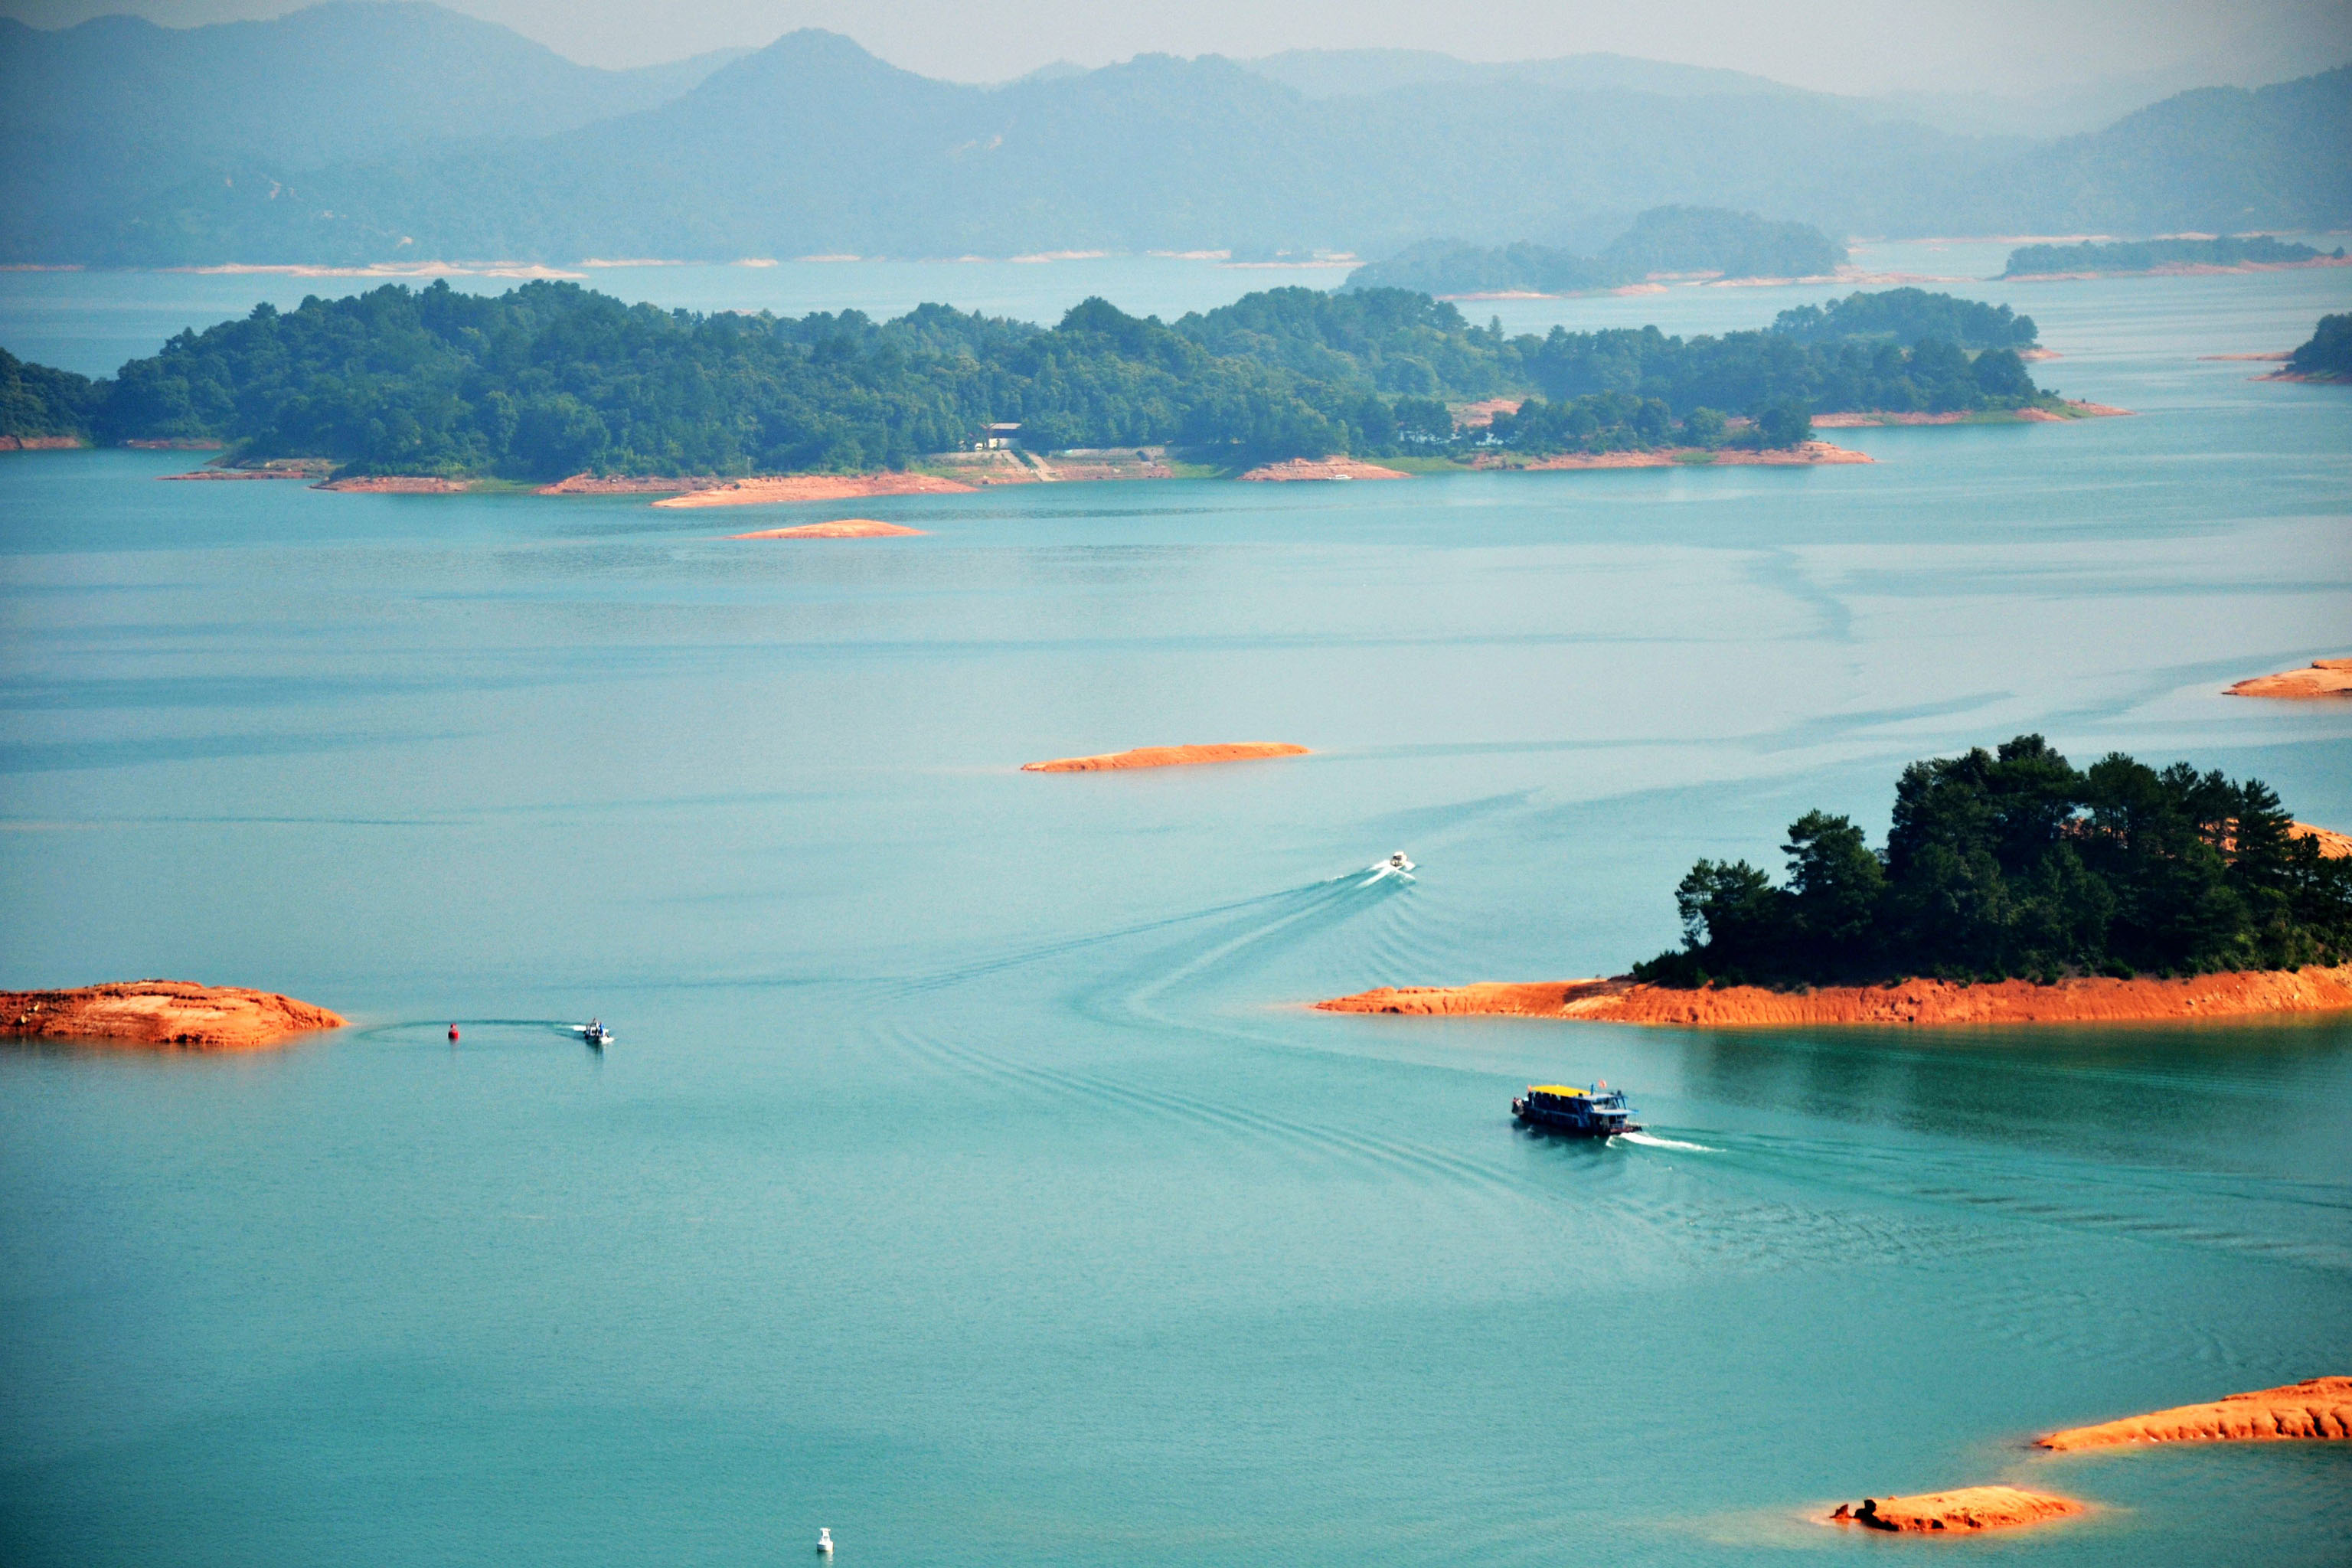 【携程攻略】东源万绿湖景点,万绿湖风景区是华南地区最大的人工湖（新丰江水库），因这里四季皆绿…